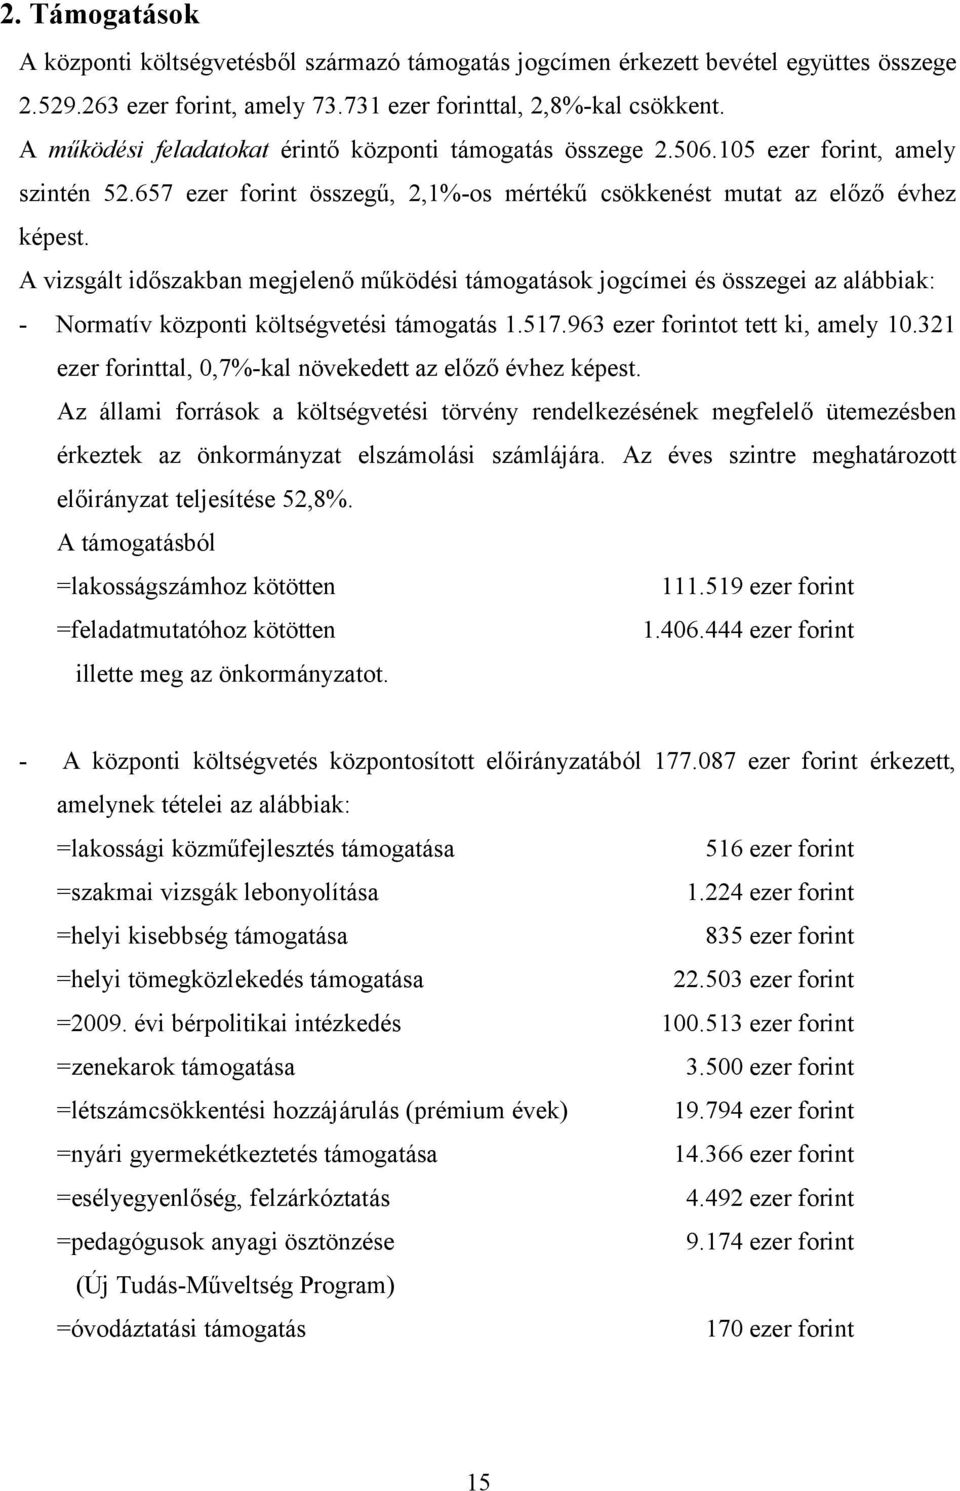 A vizsgált időszakban megjelenő működési támogatások jogcímei és összegei az alábbiak: - Normatív központi költségvetési támogatás 1.517.963 ezer forintot tett ki, amely 10.